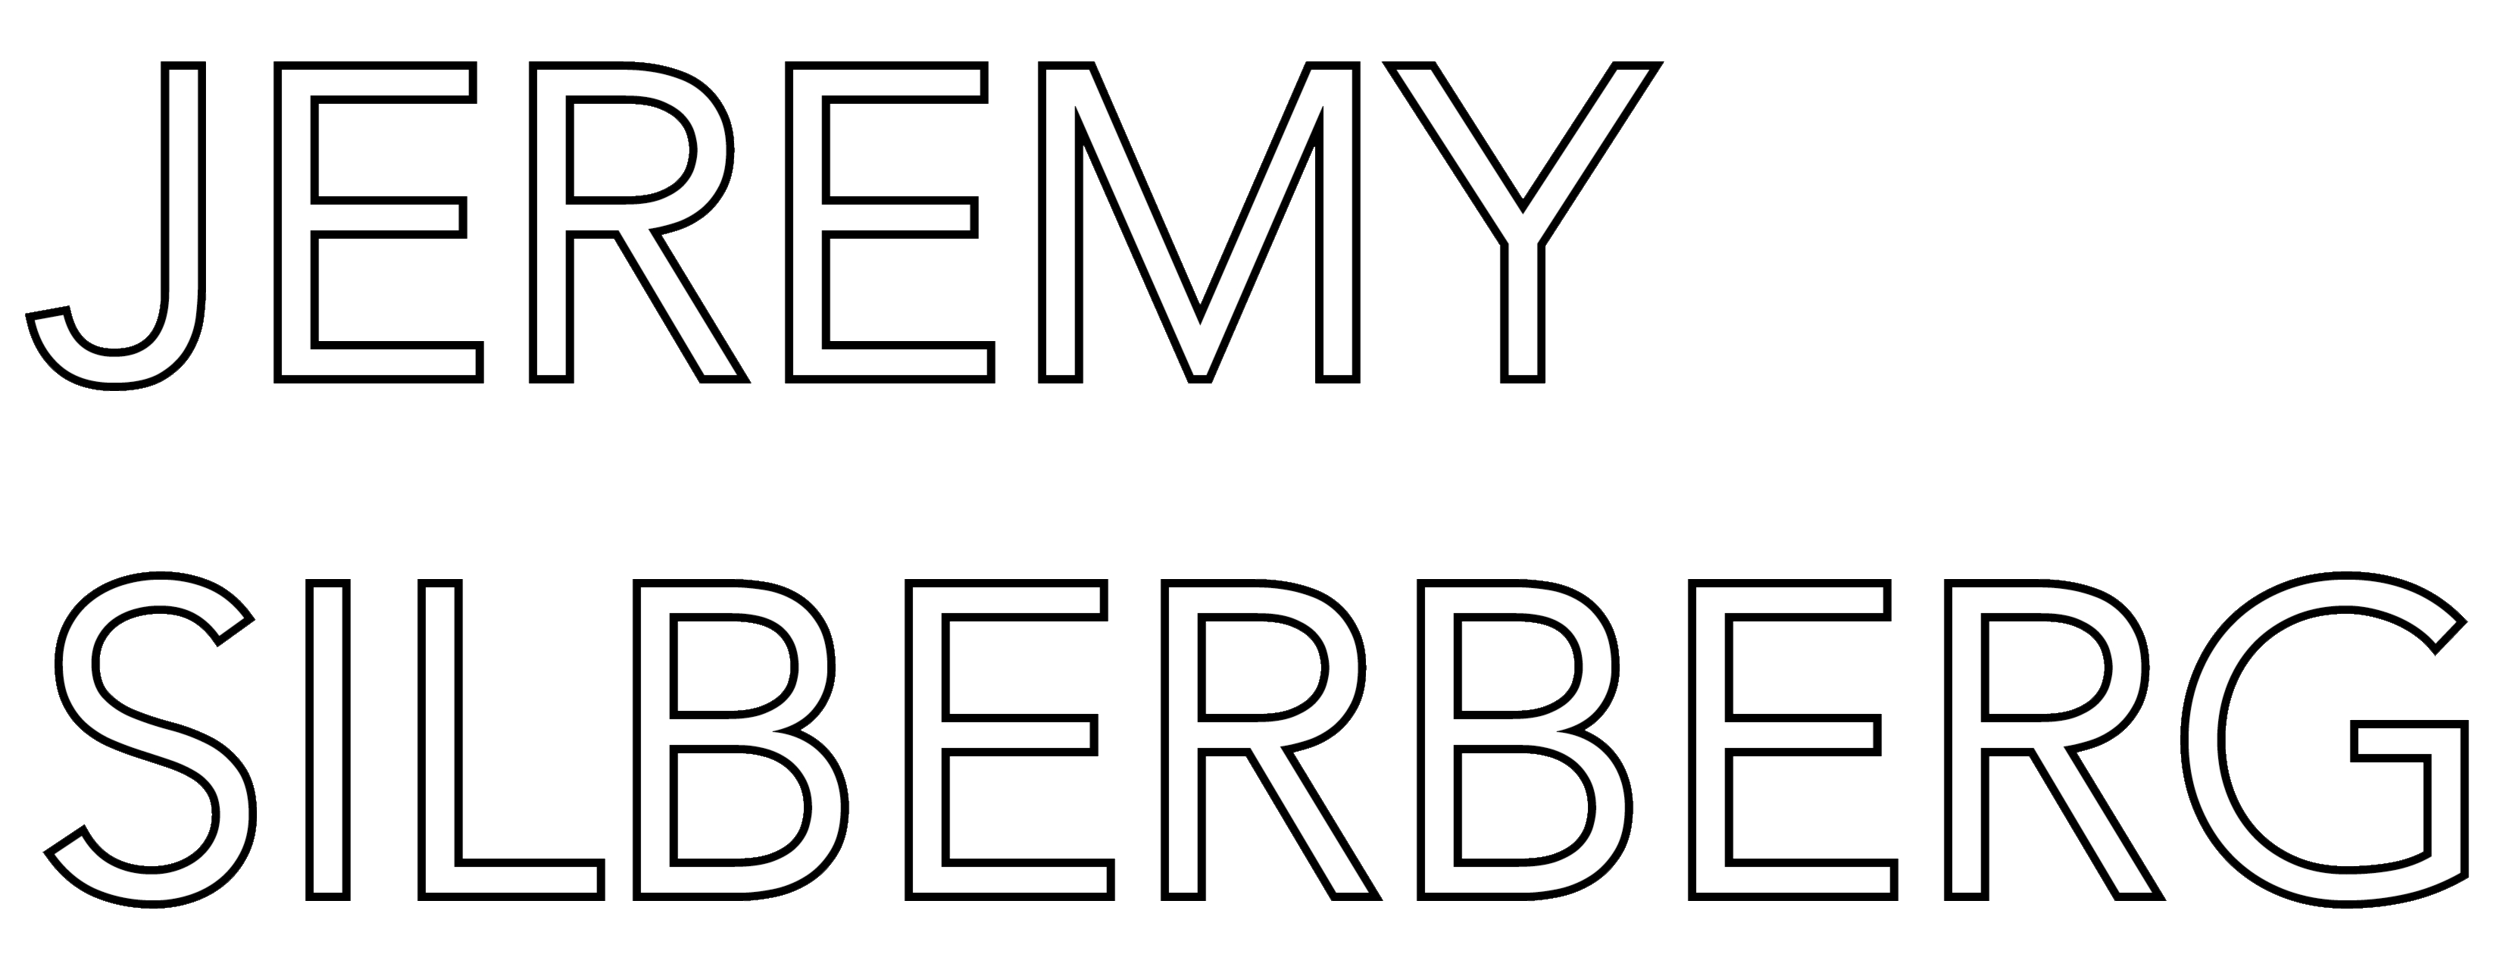 JEREMY SILBERBERG